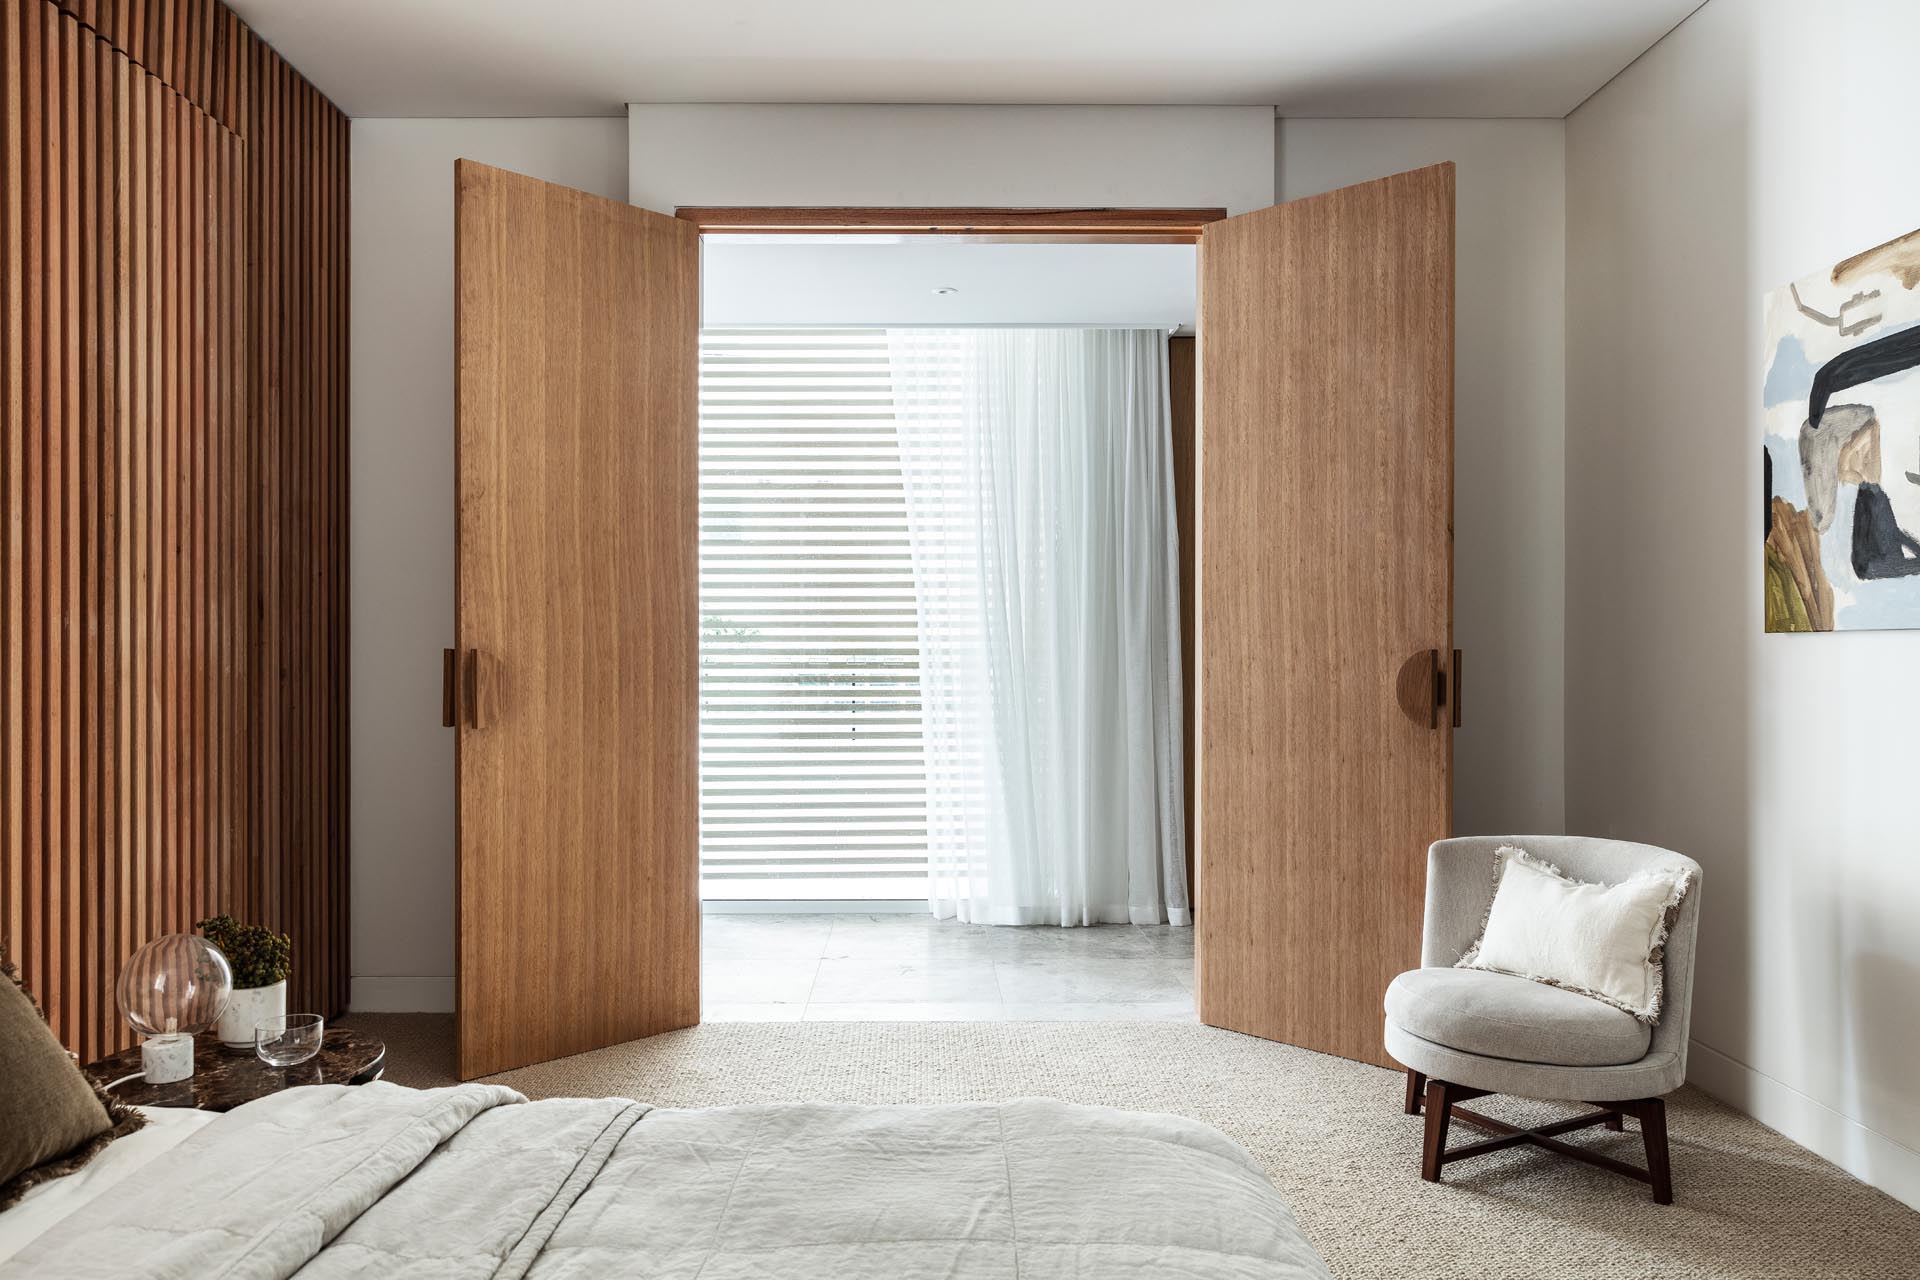 Две деревянные двери открываются в эту современную спальню, где стена из деревянных реек была использована для создания акцентной стены за кроватью.